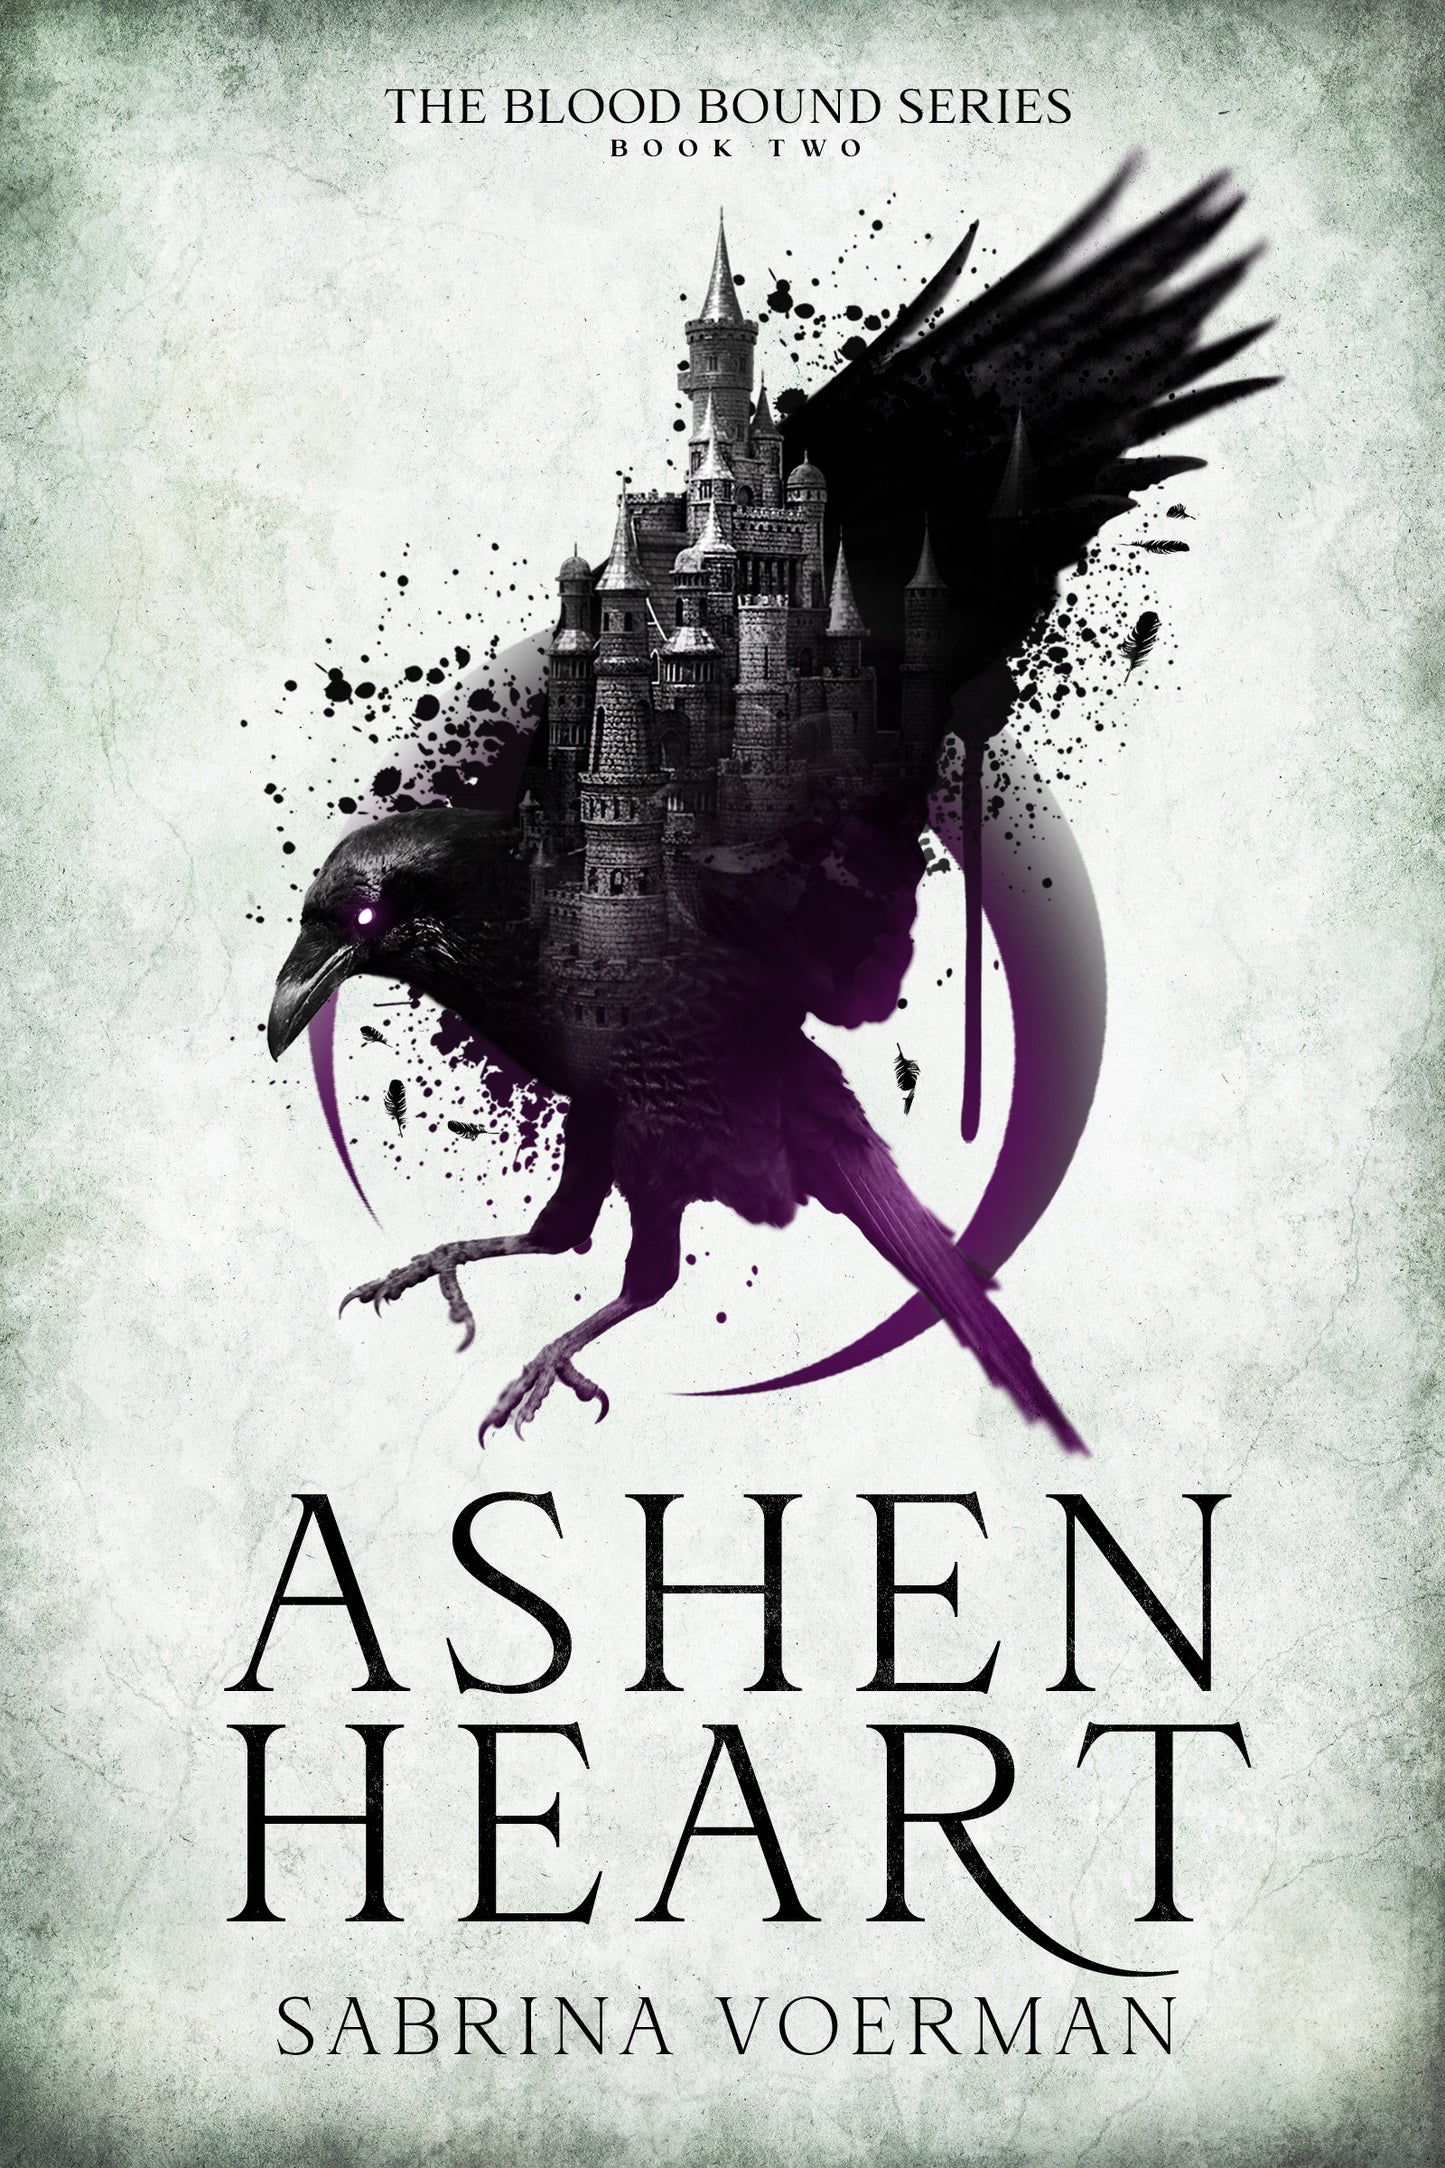 Ashen Heart : La série Blood Bound, tome 2 (PRÉCOMMANDE)